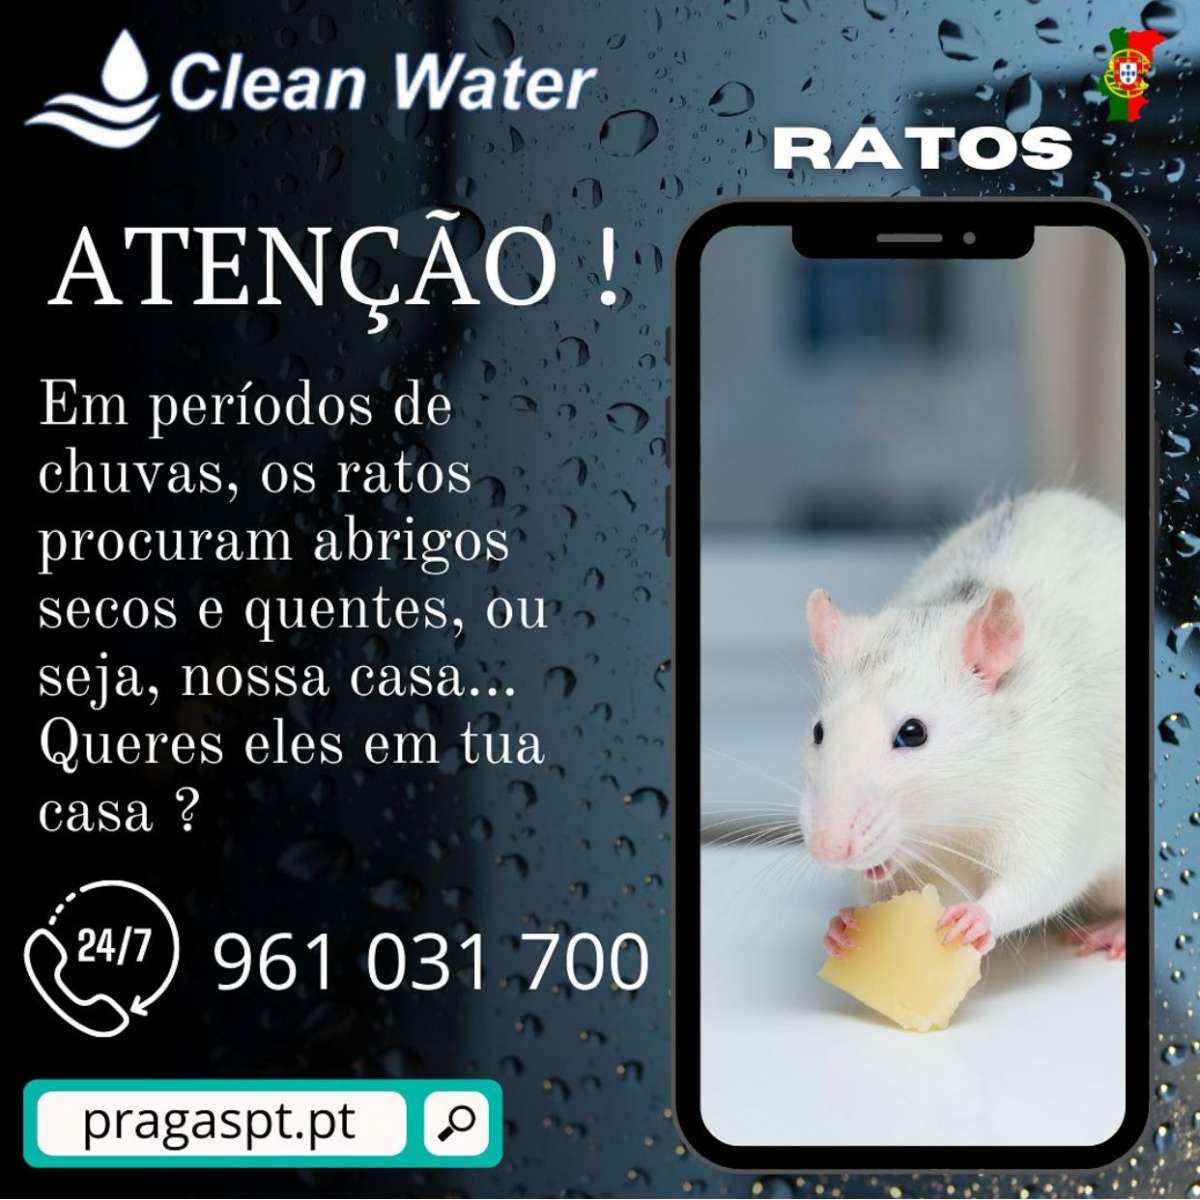 Clean water controlo de pragas - Sintra - Limpeza de Janelas